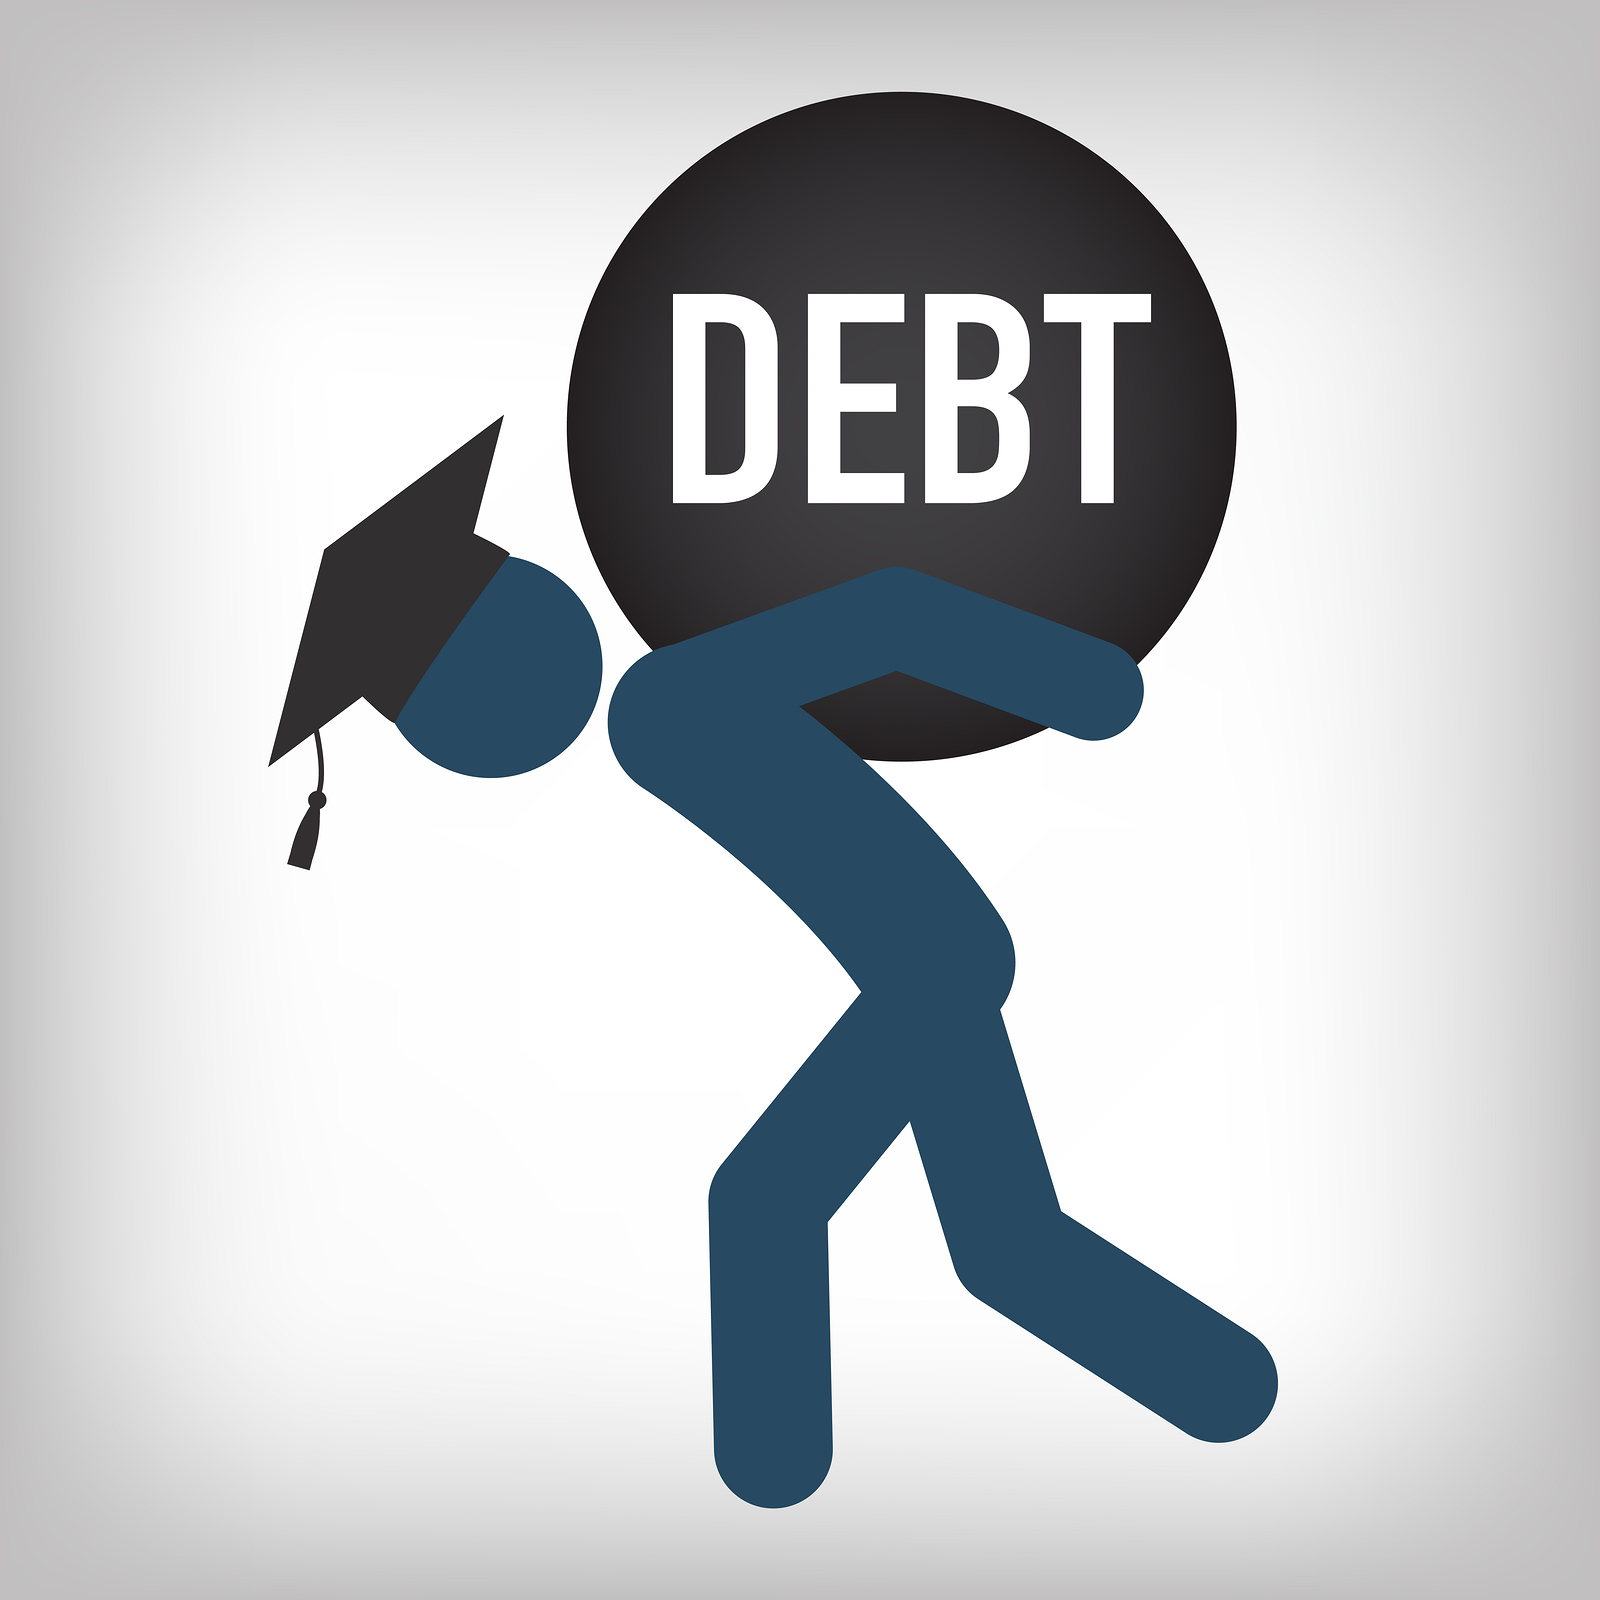 bigstock-Graduate-Student-Loan-Debt-Cs-127900988.jpg